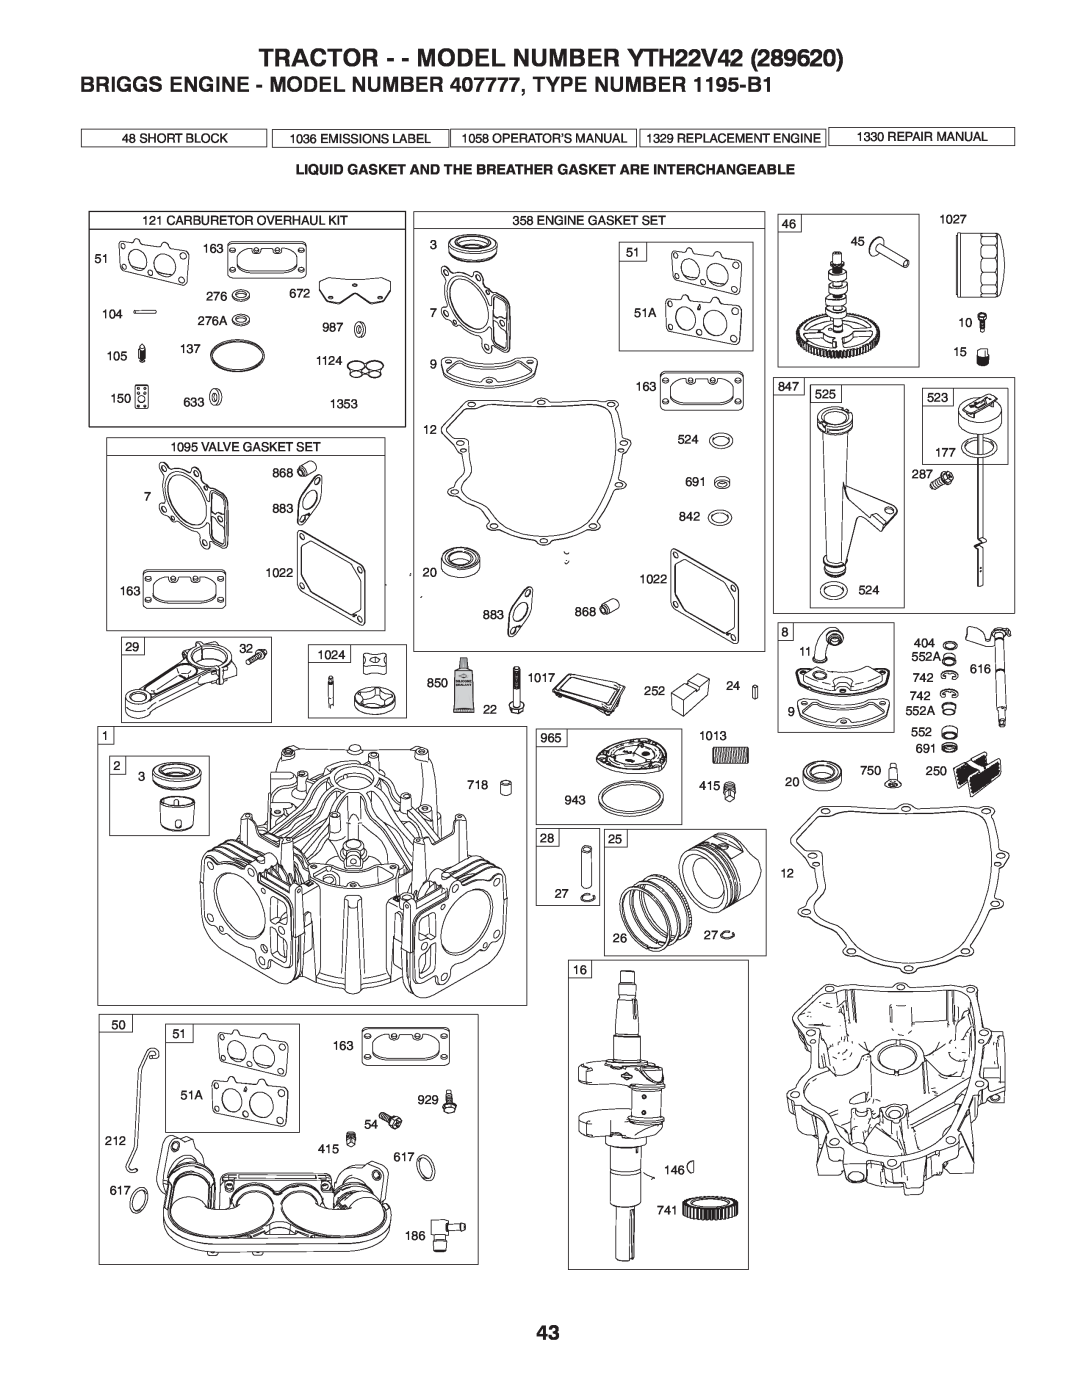 Husqvarna owner manual BRIGGS ENGINE - MODEL NUMBER 407777, TYPE NUMBER 1195-B1, TRACTOR - - MODEL NUMBER YTH22V42 